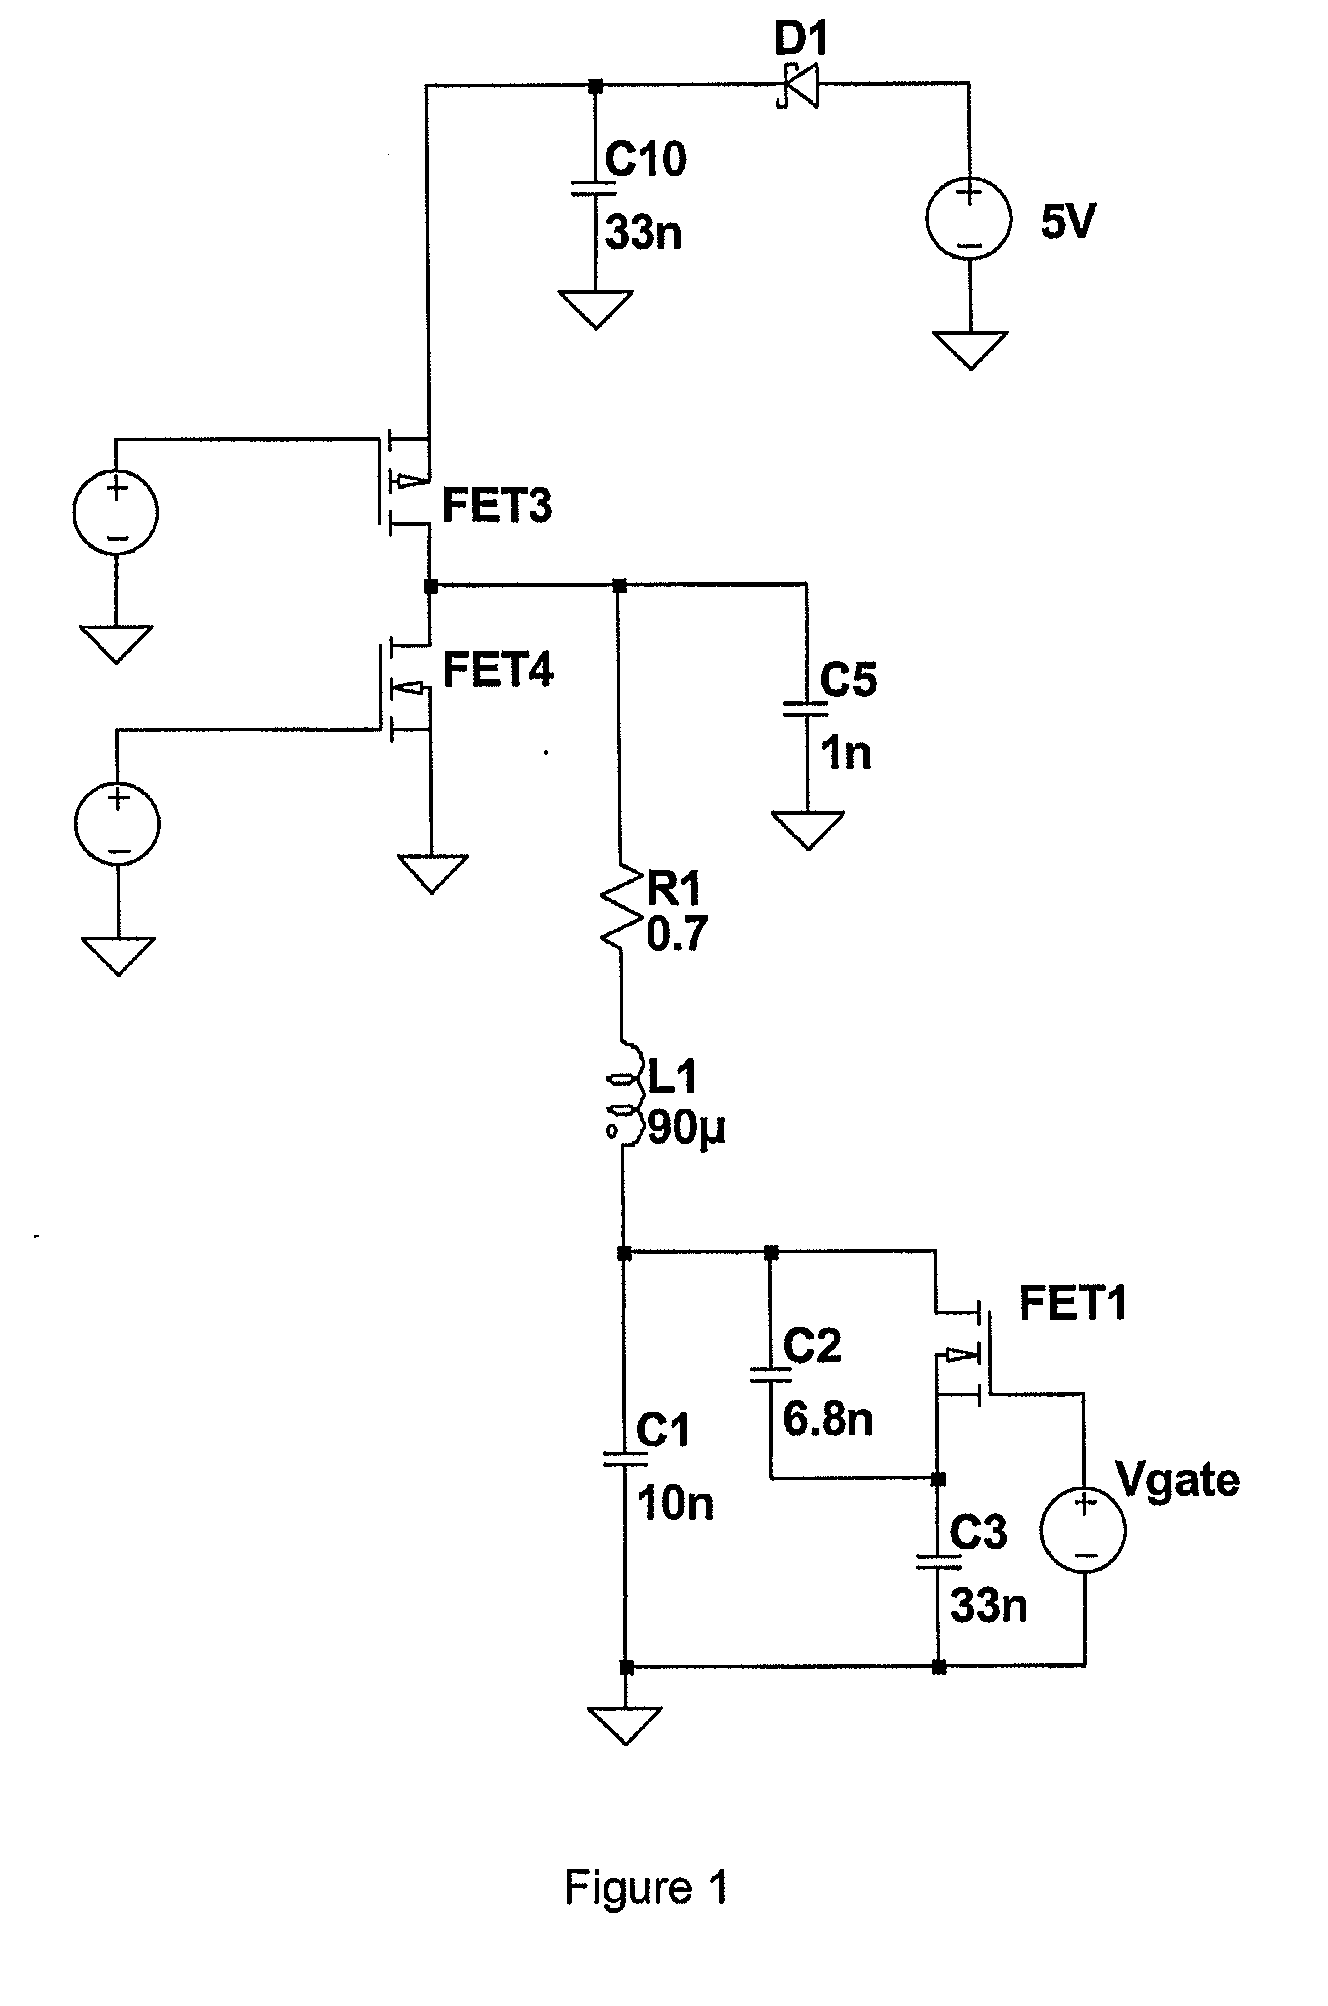 RFID transmitter